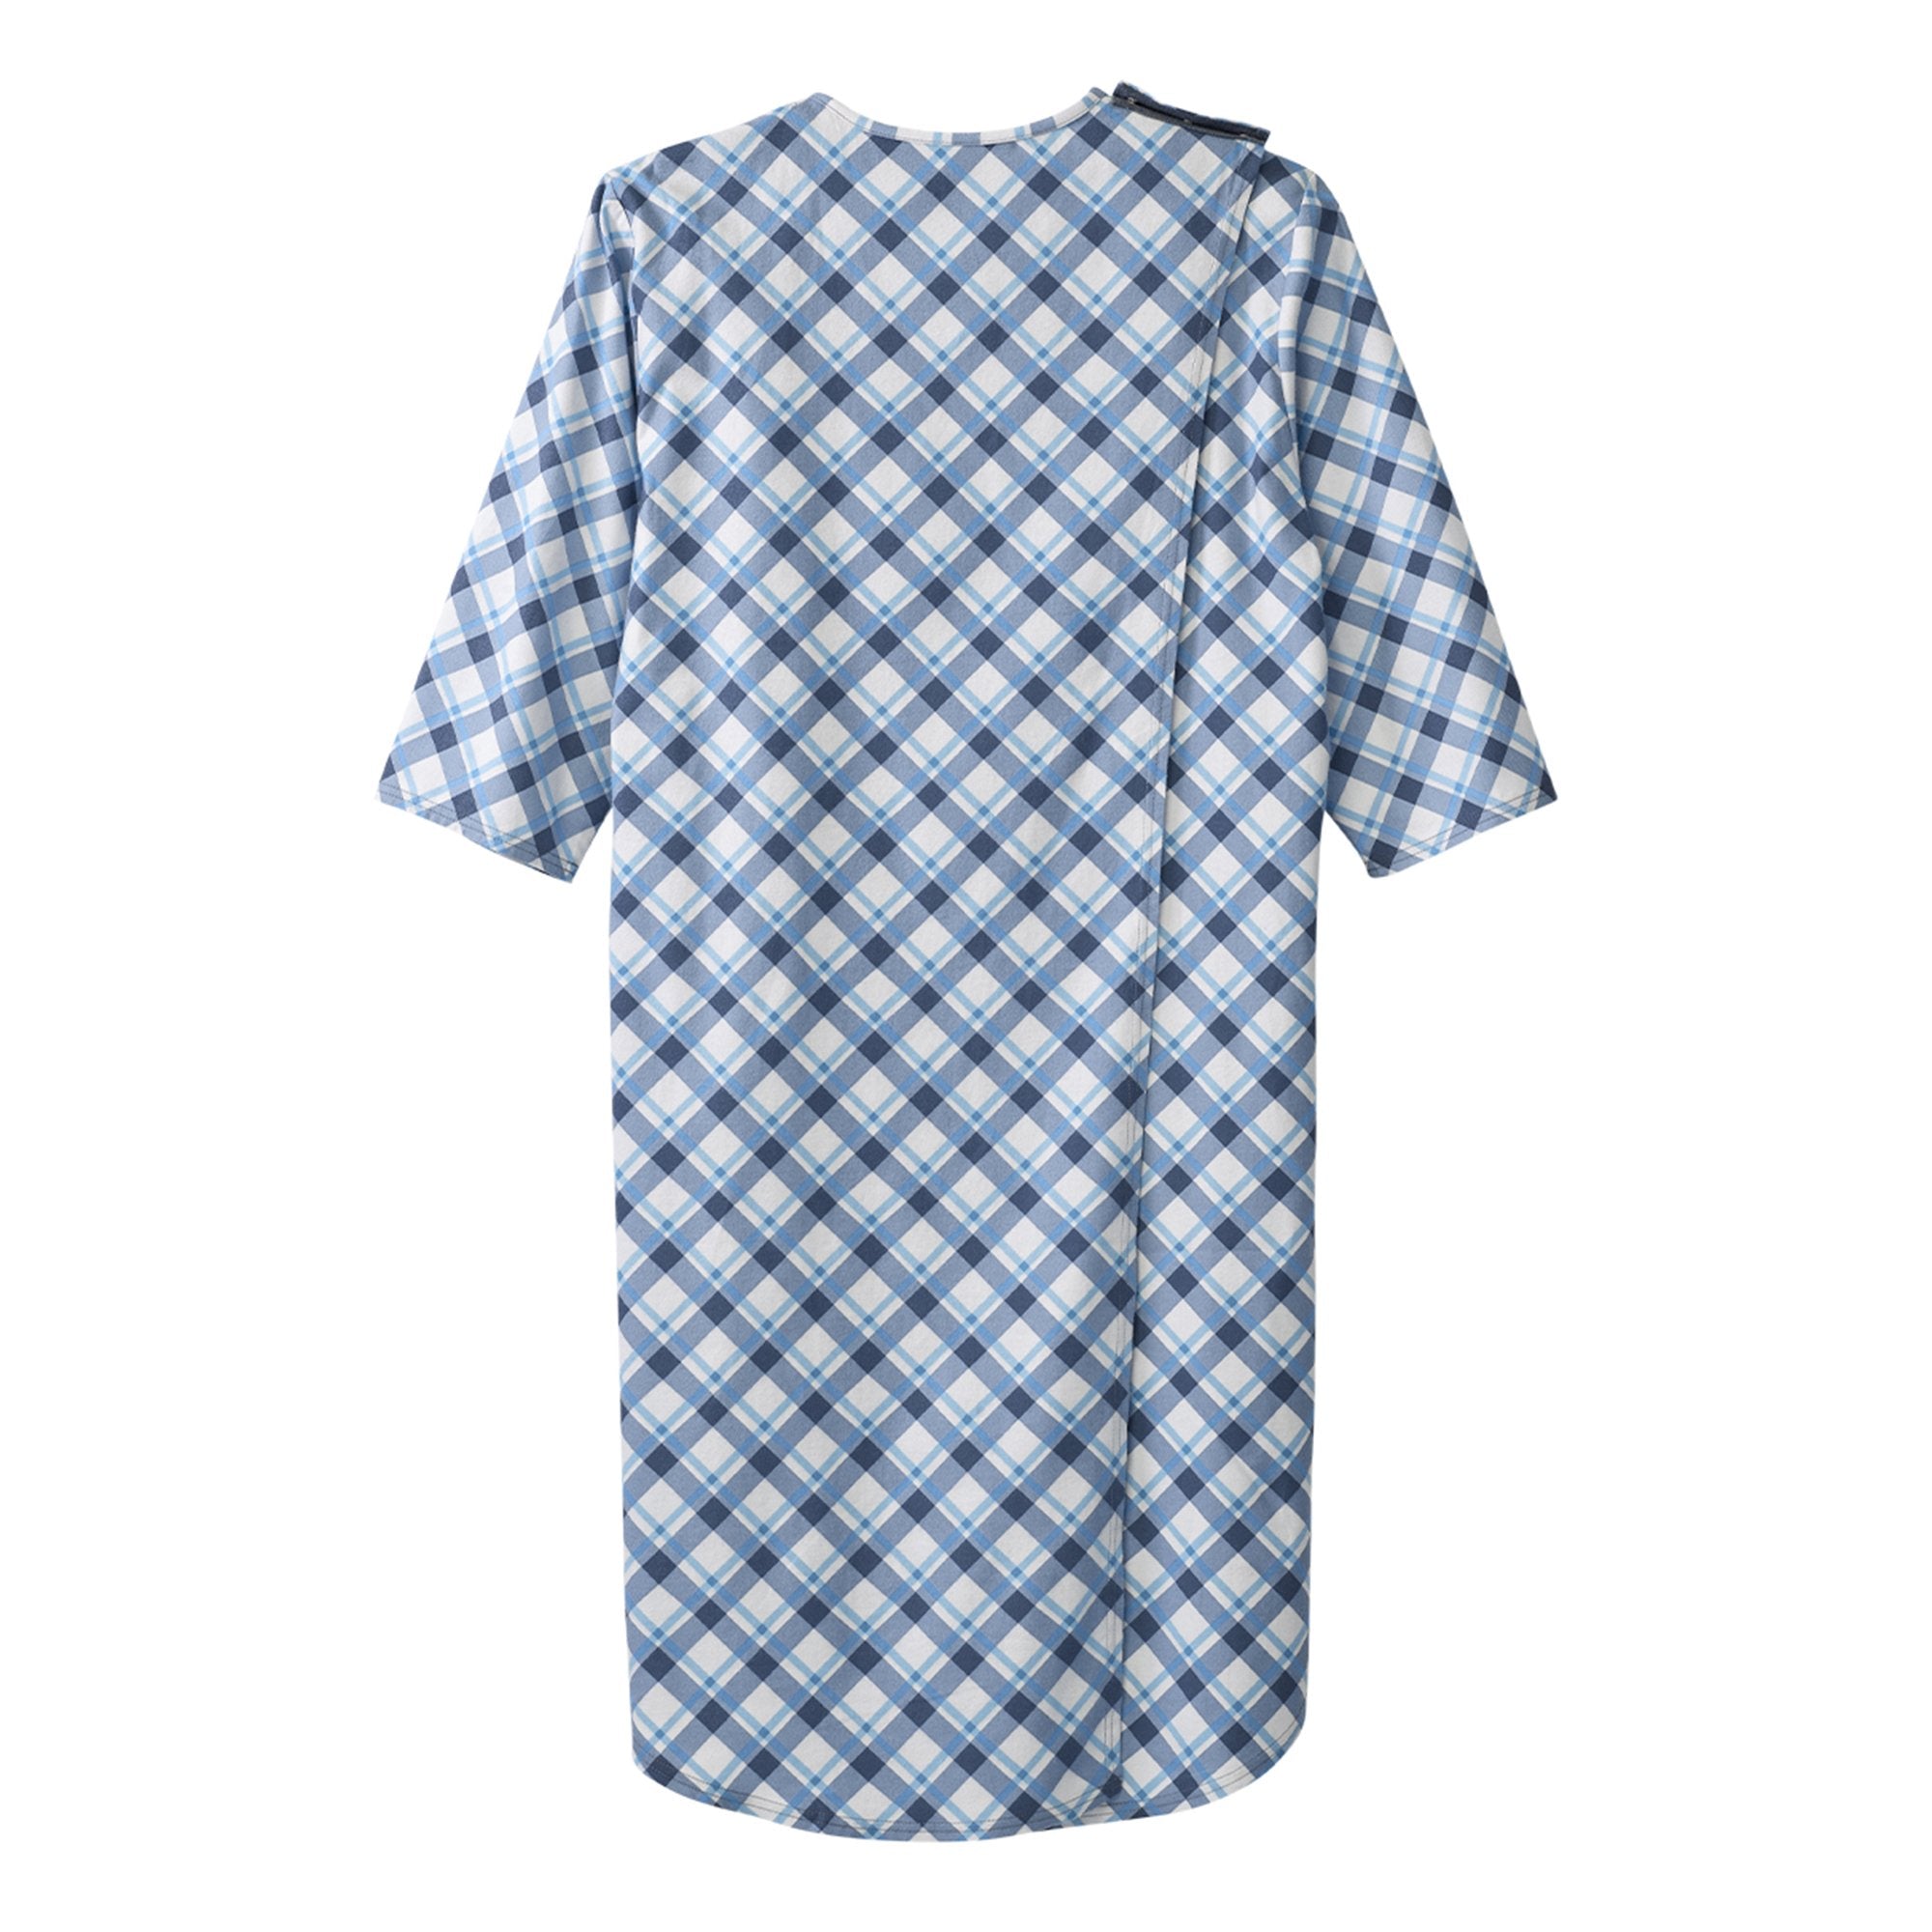 Silverts® Shoulder Snap Patient Exam Gown, Large, Diagonal Blue Plaid (1 Unit)